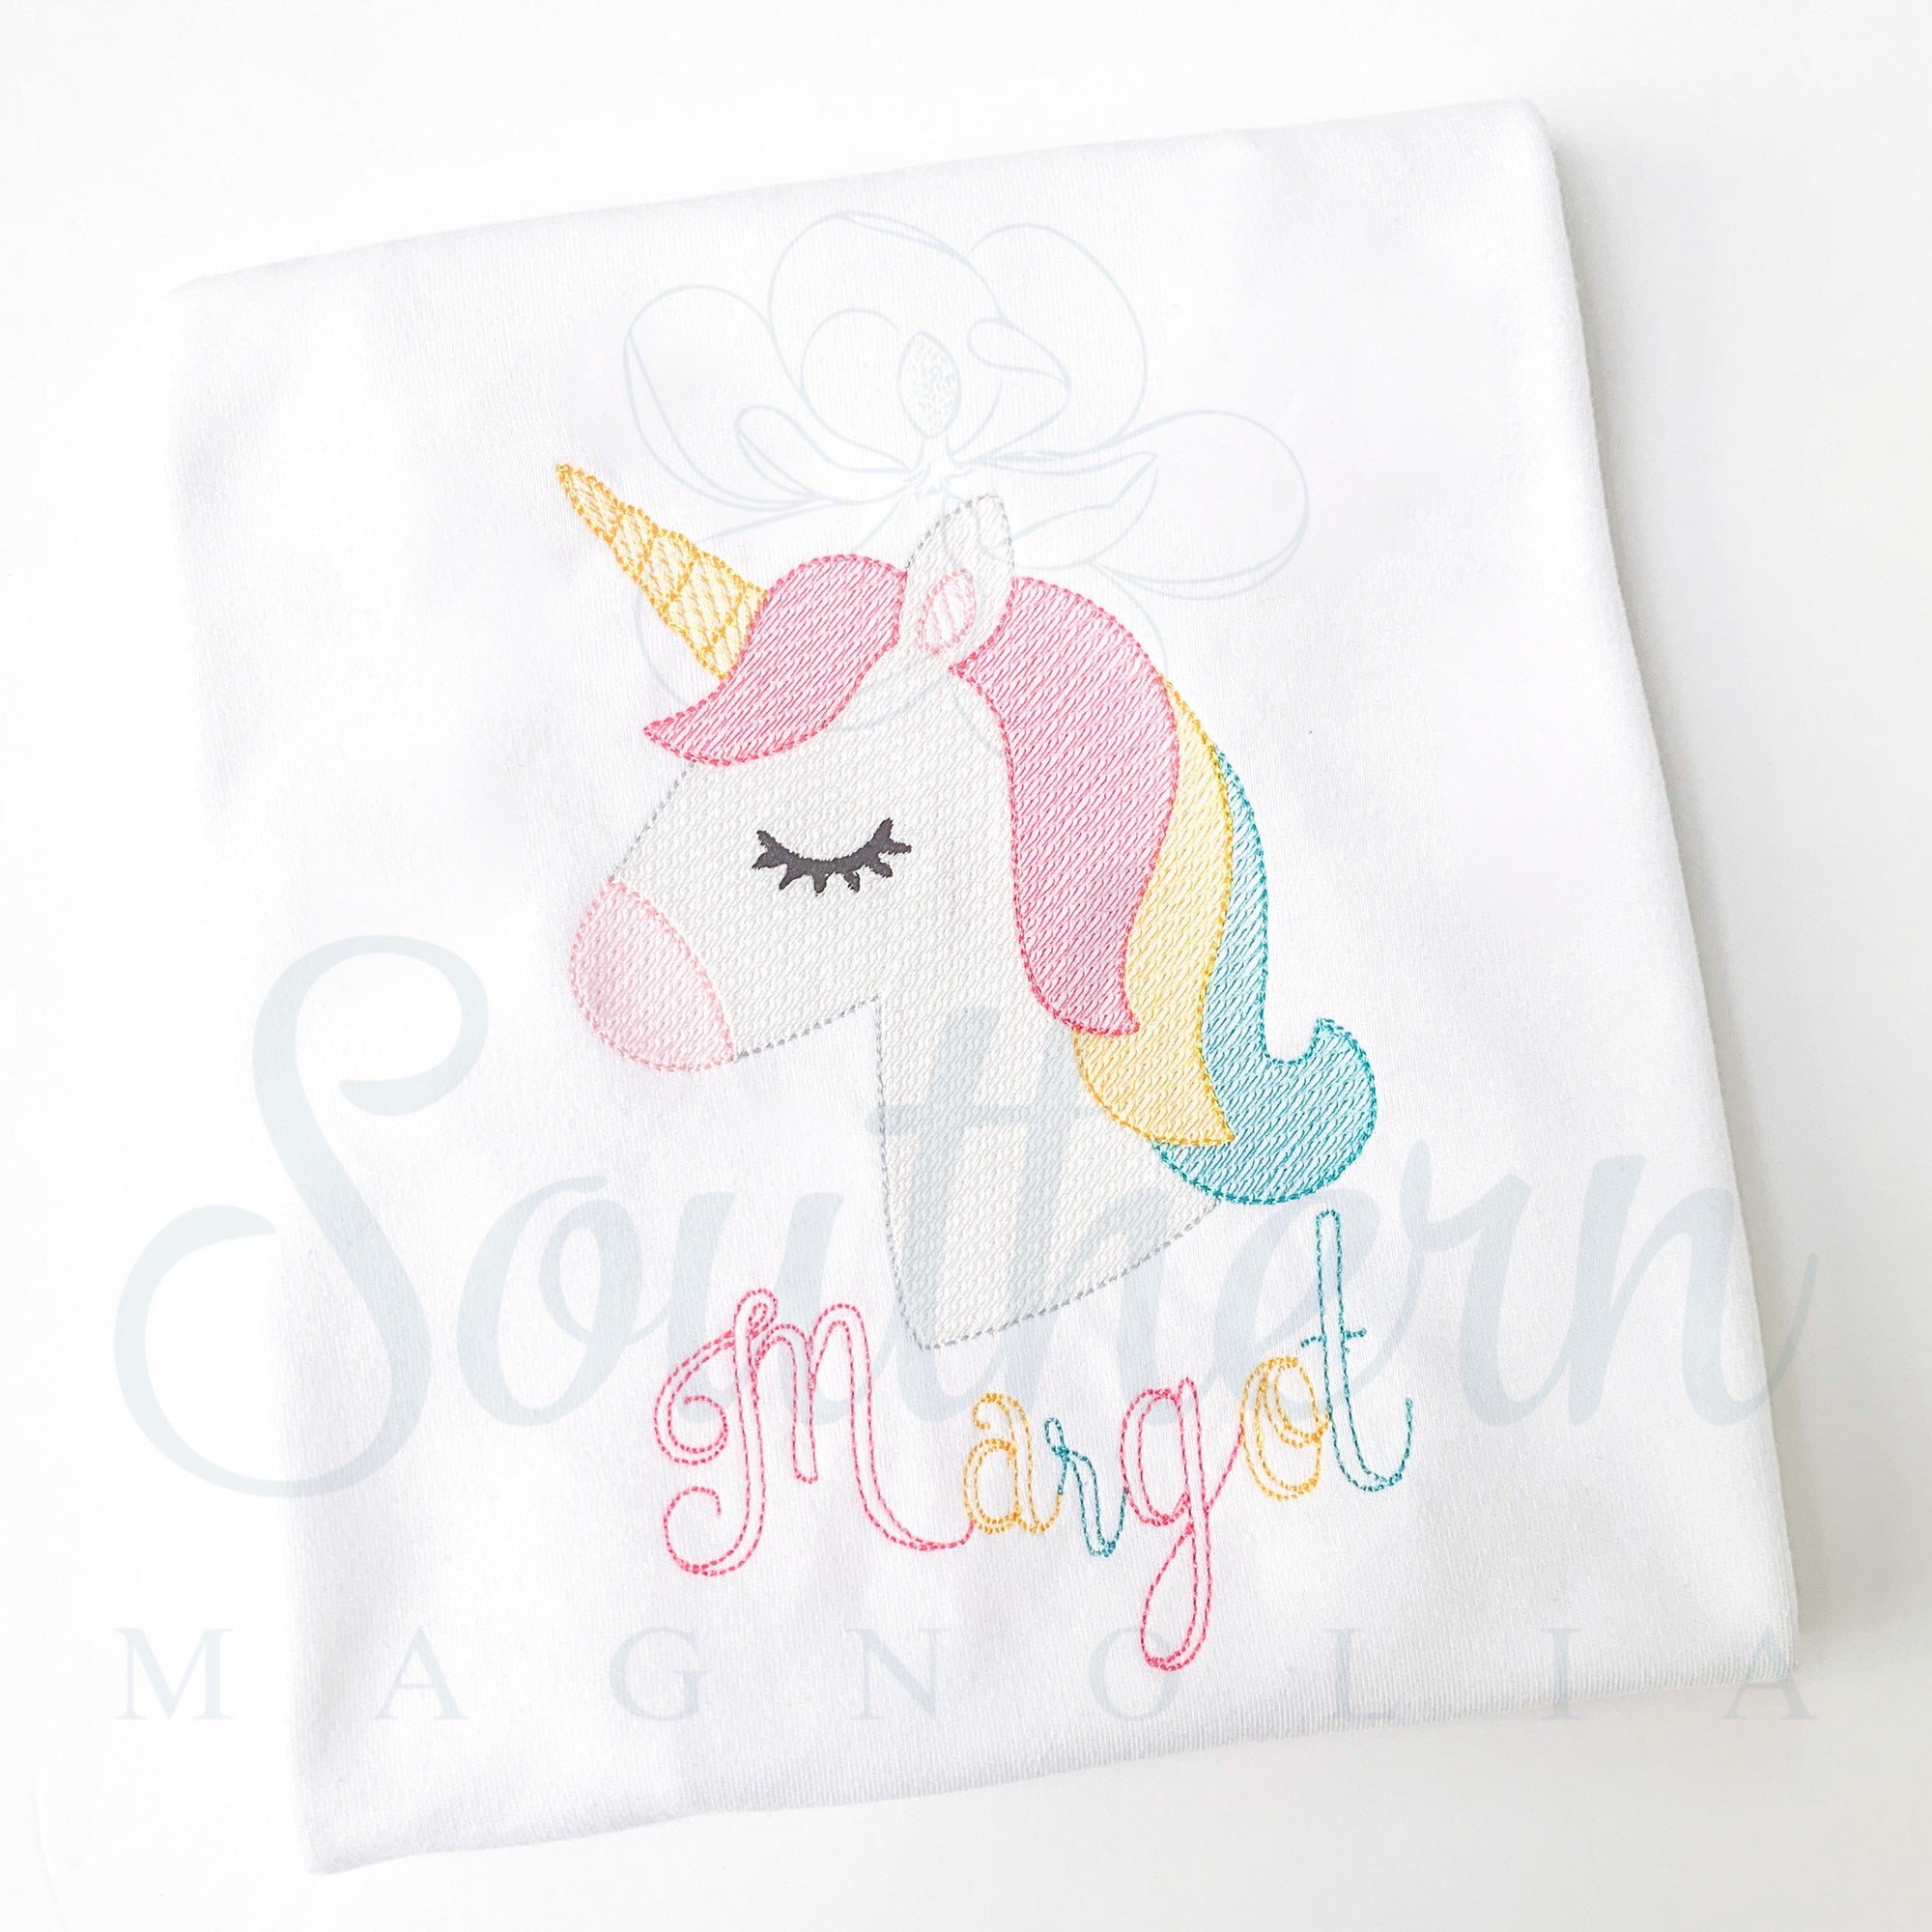 Unicorn Sketch Fill Embroidery Design